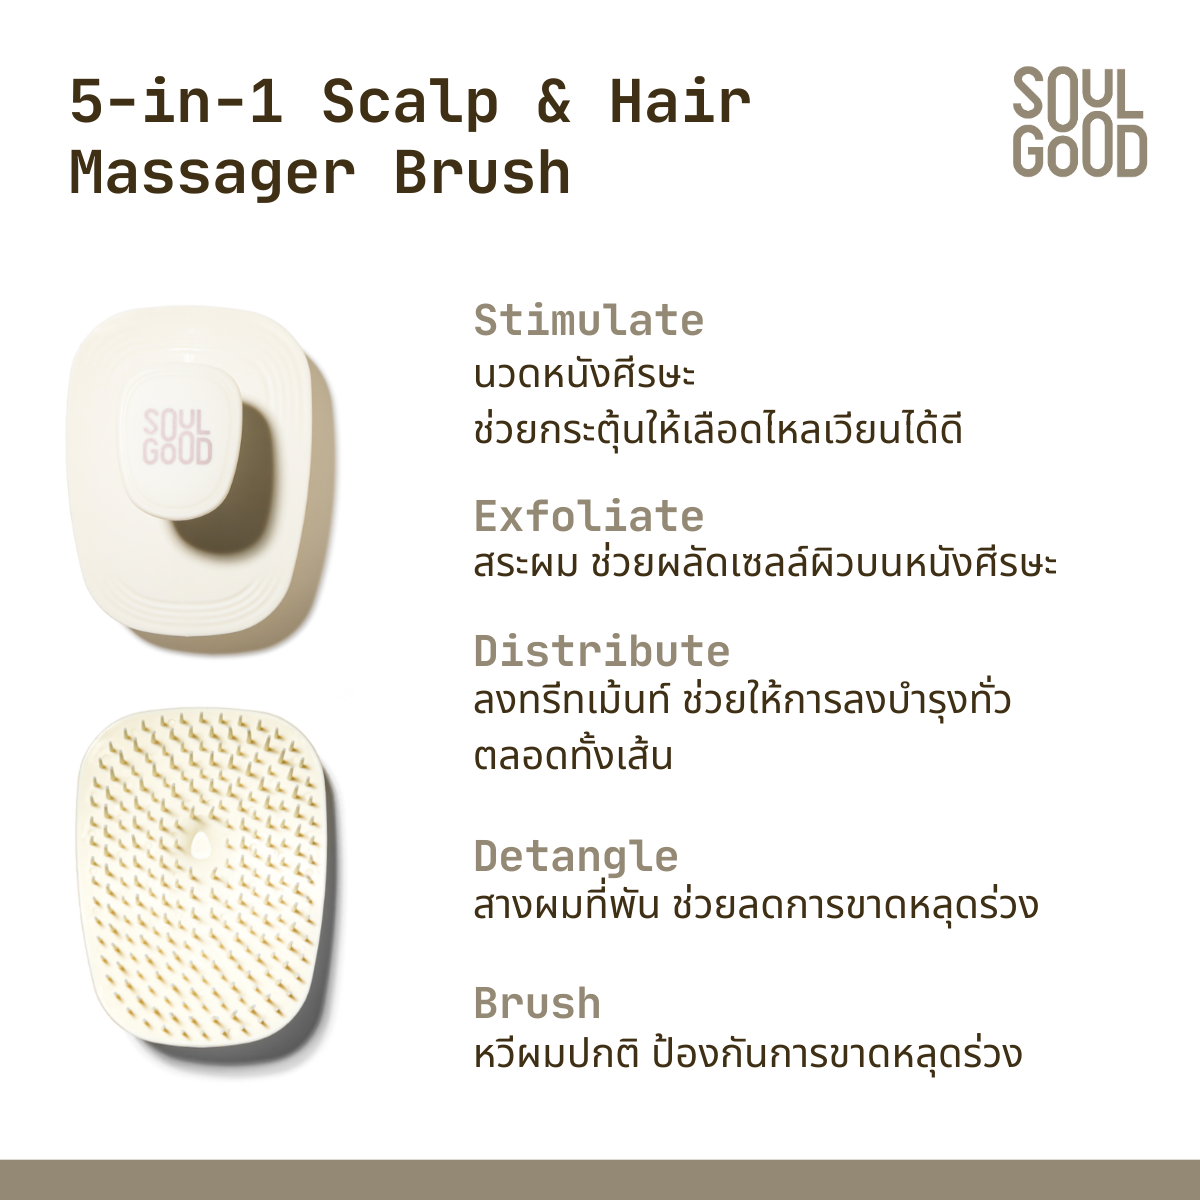 5-in-1 Scalp & Hair Massager Brush